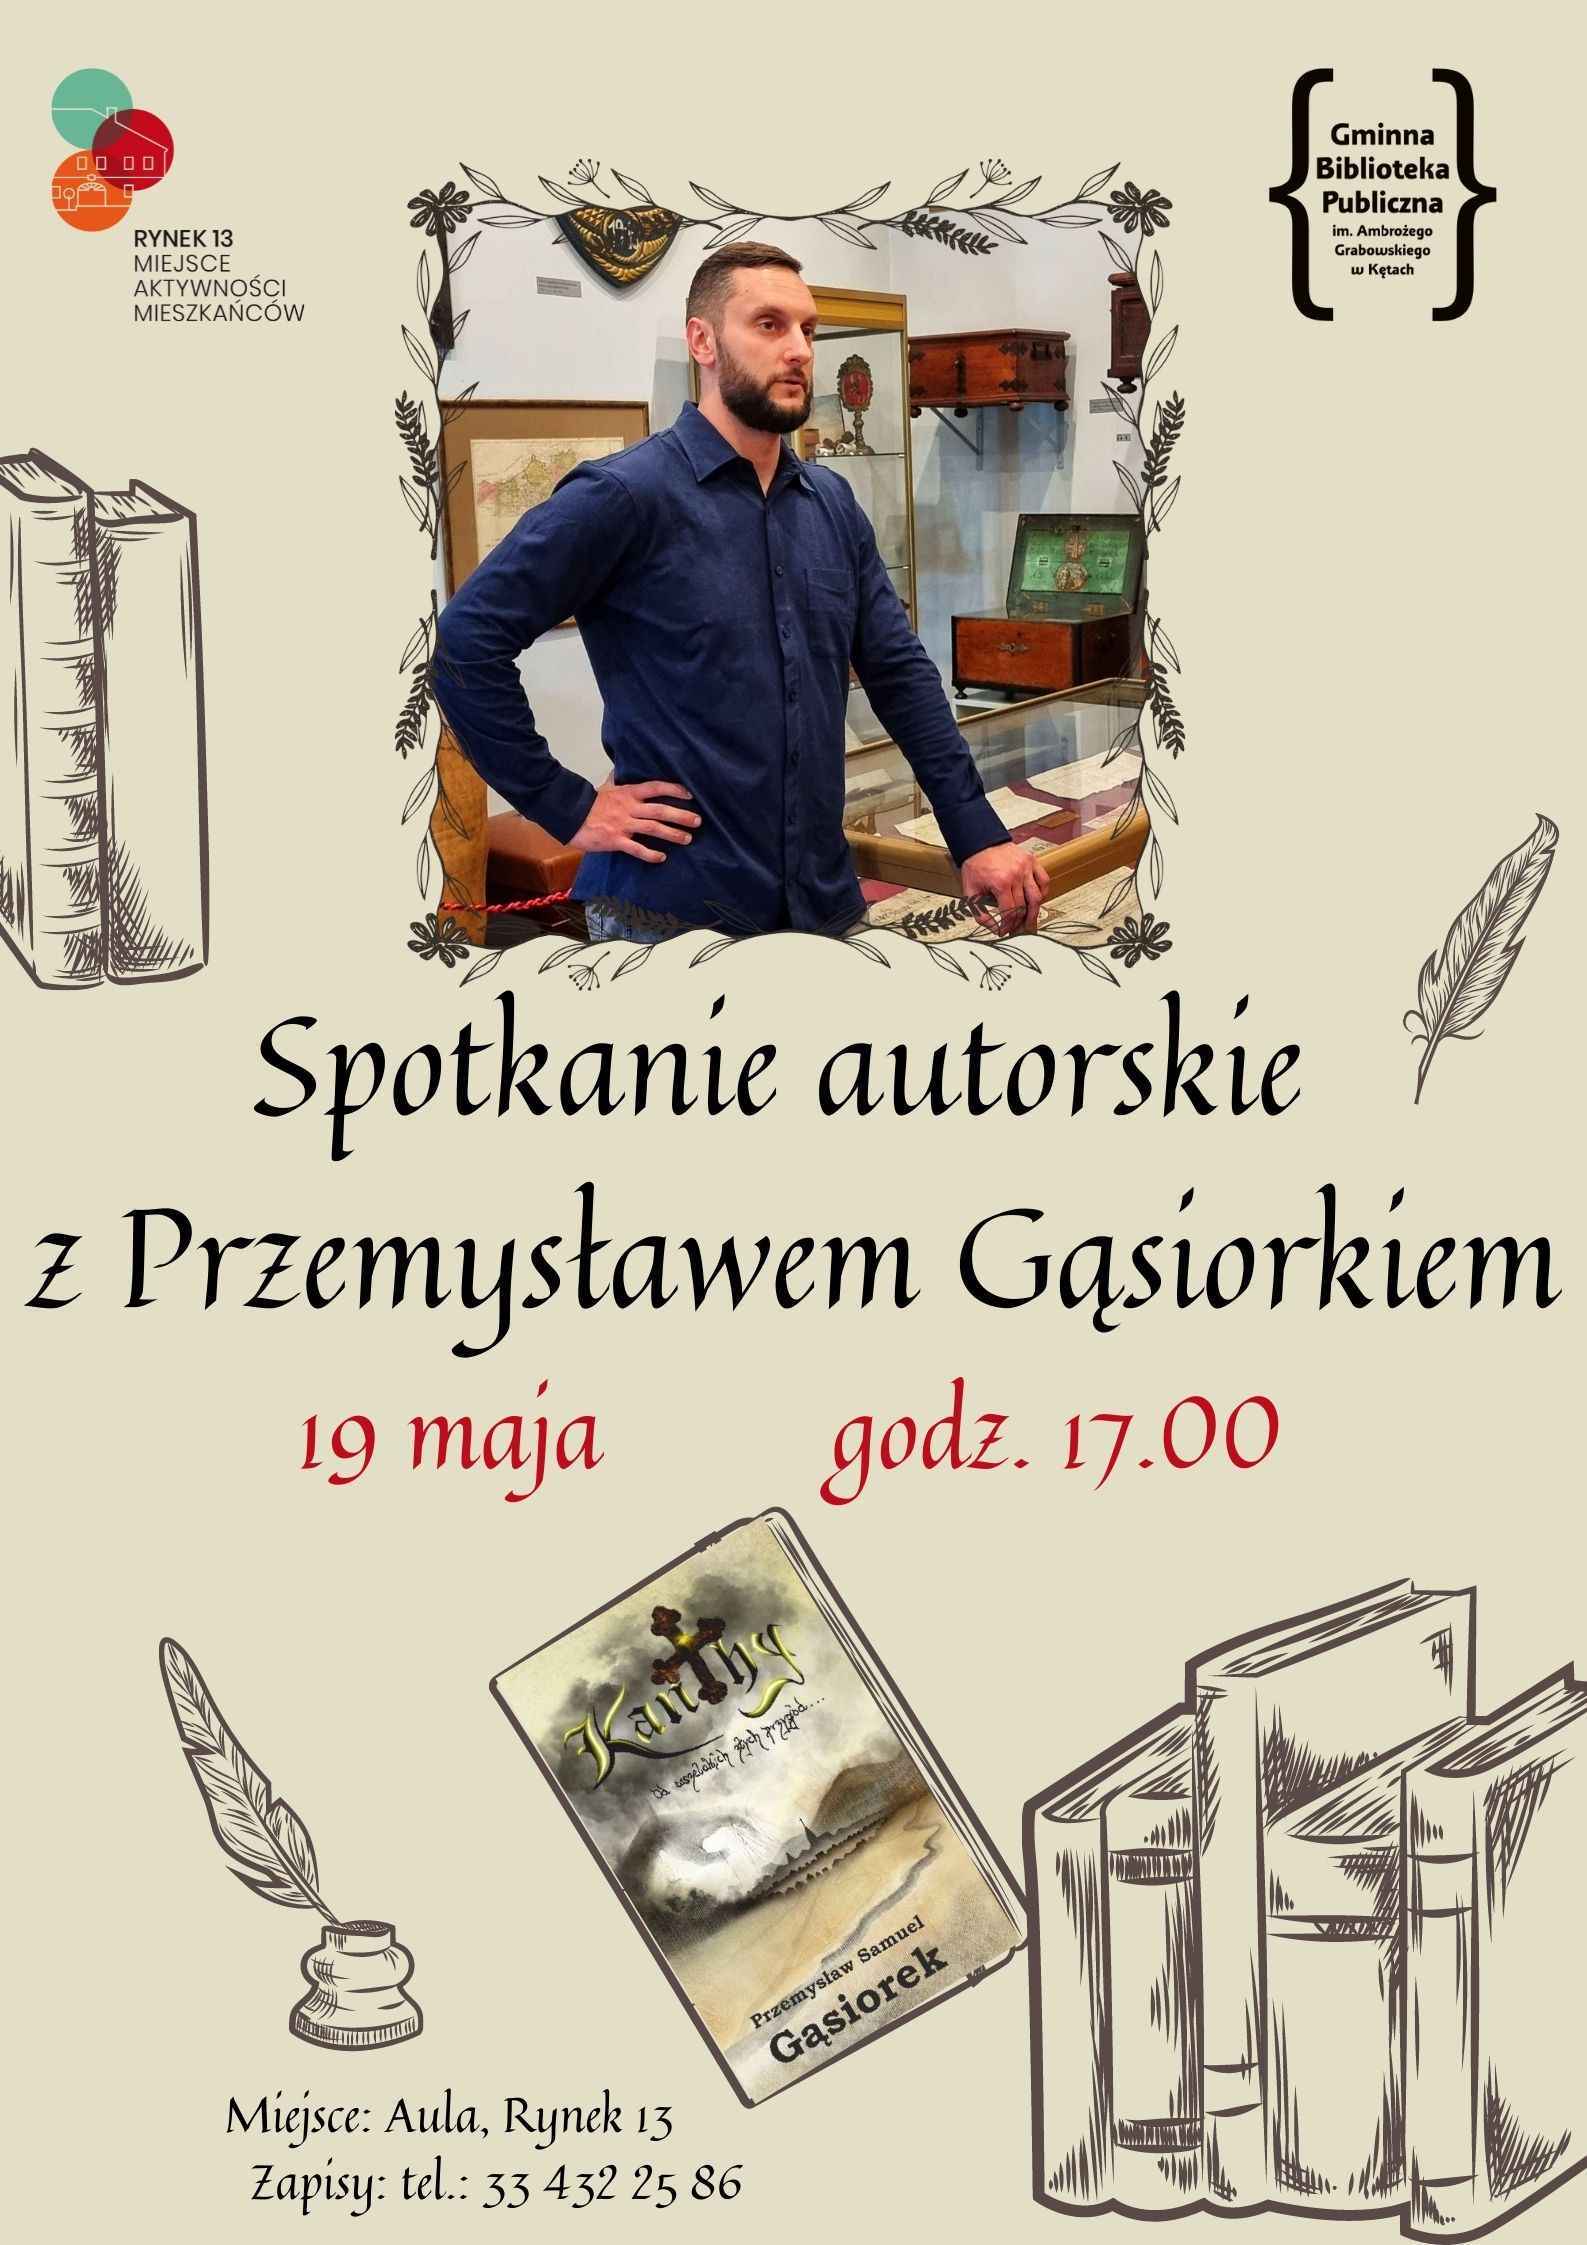 Spotkanie autorskie z Przemysławem Gąsiorkiem